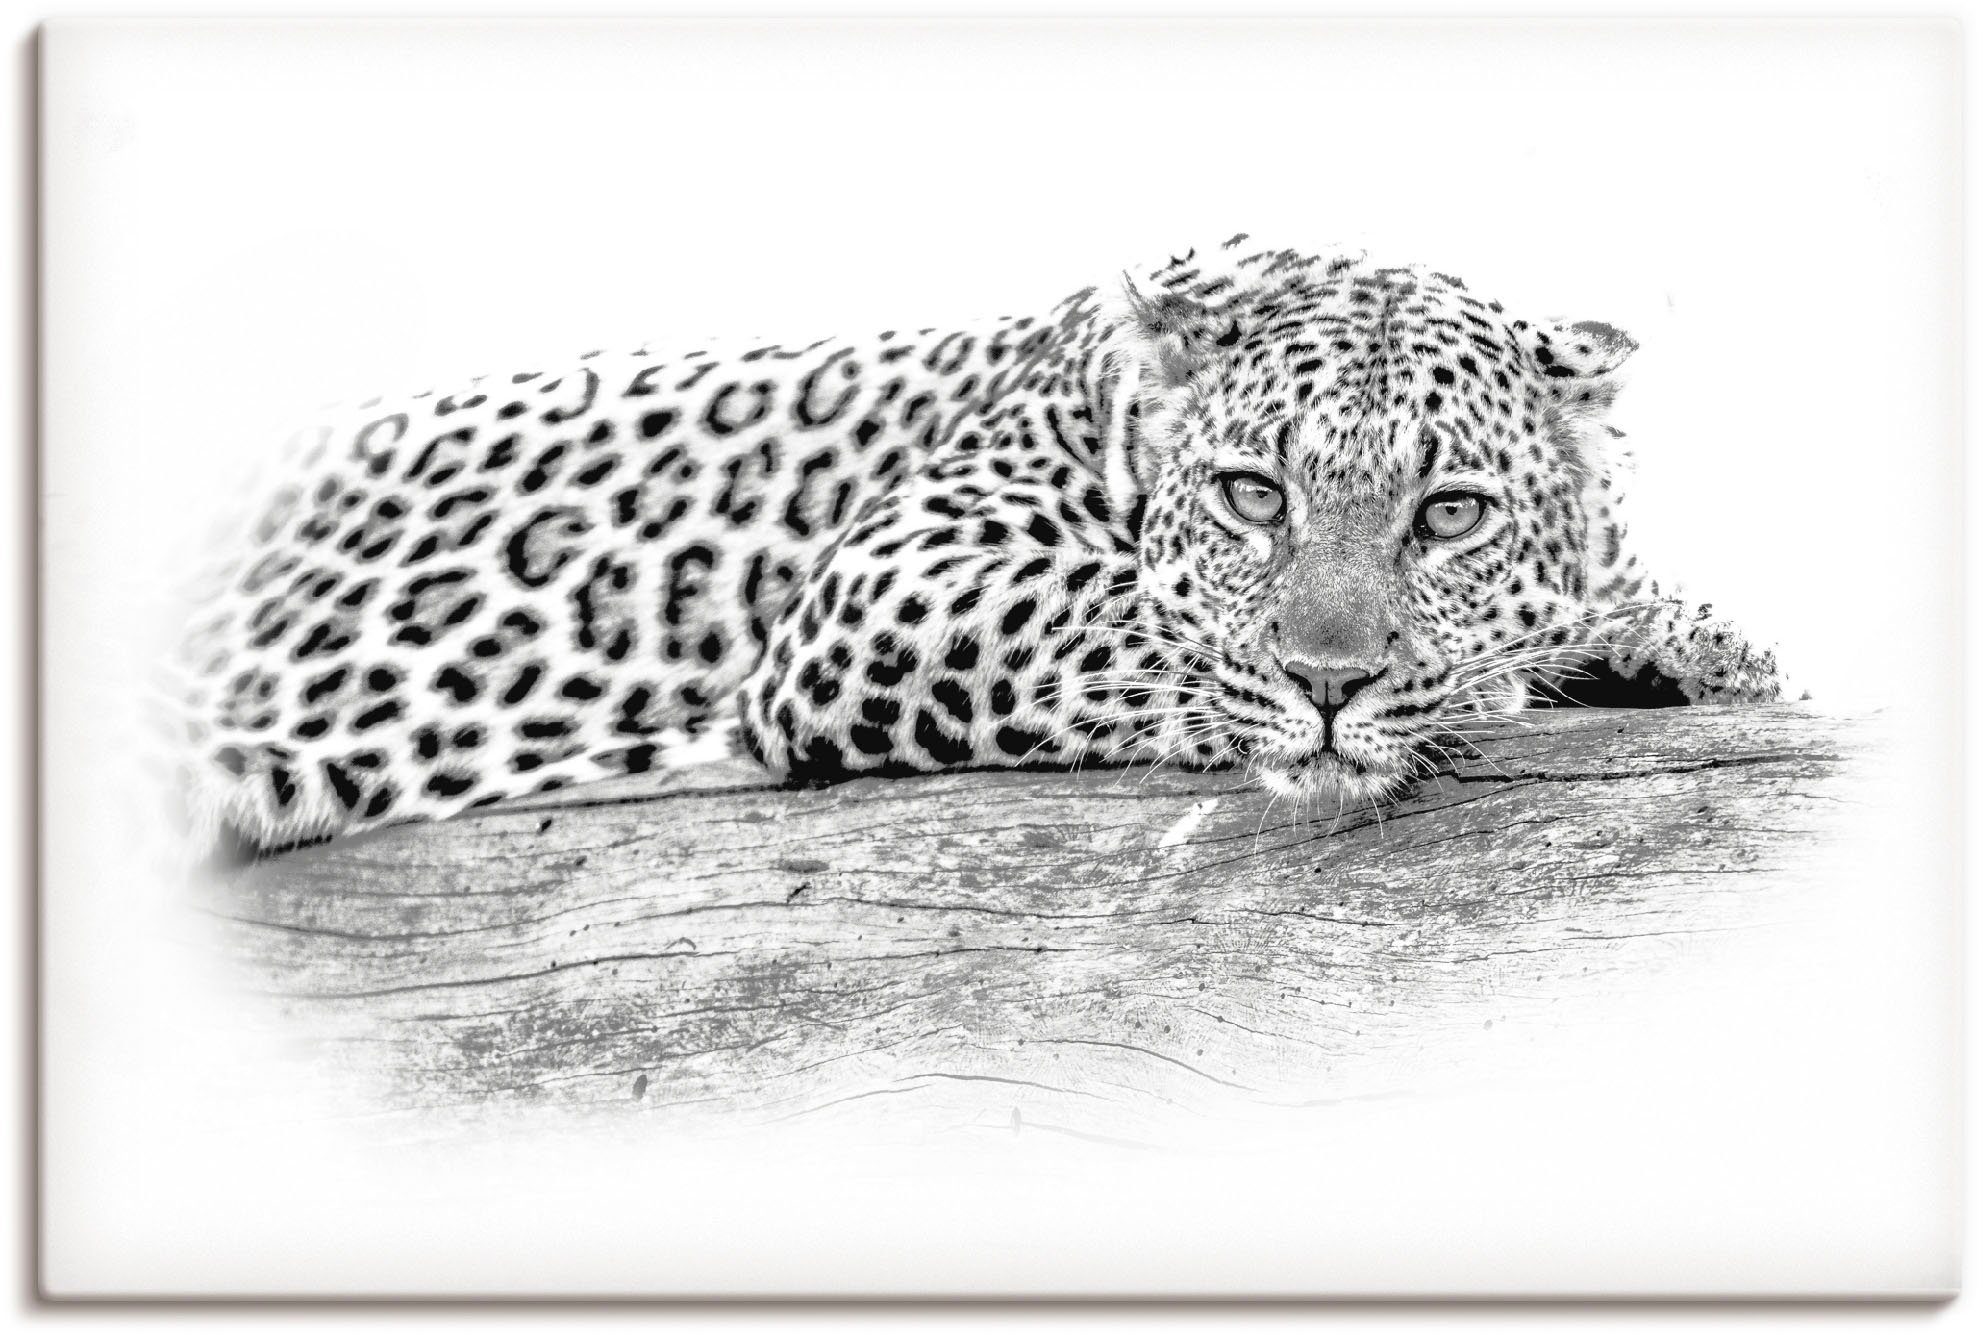 Artland Artprint Leopard High Key Optik in vele afmetingen & productsoorten - artprint van aluminium / artprint voor buiten, artprint op linnen, poster, muursticker / wandfolie ook